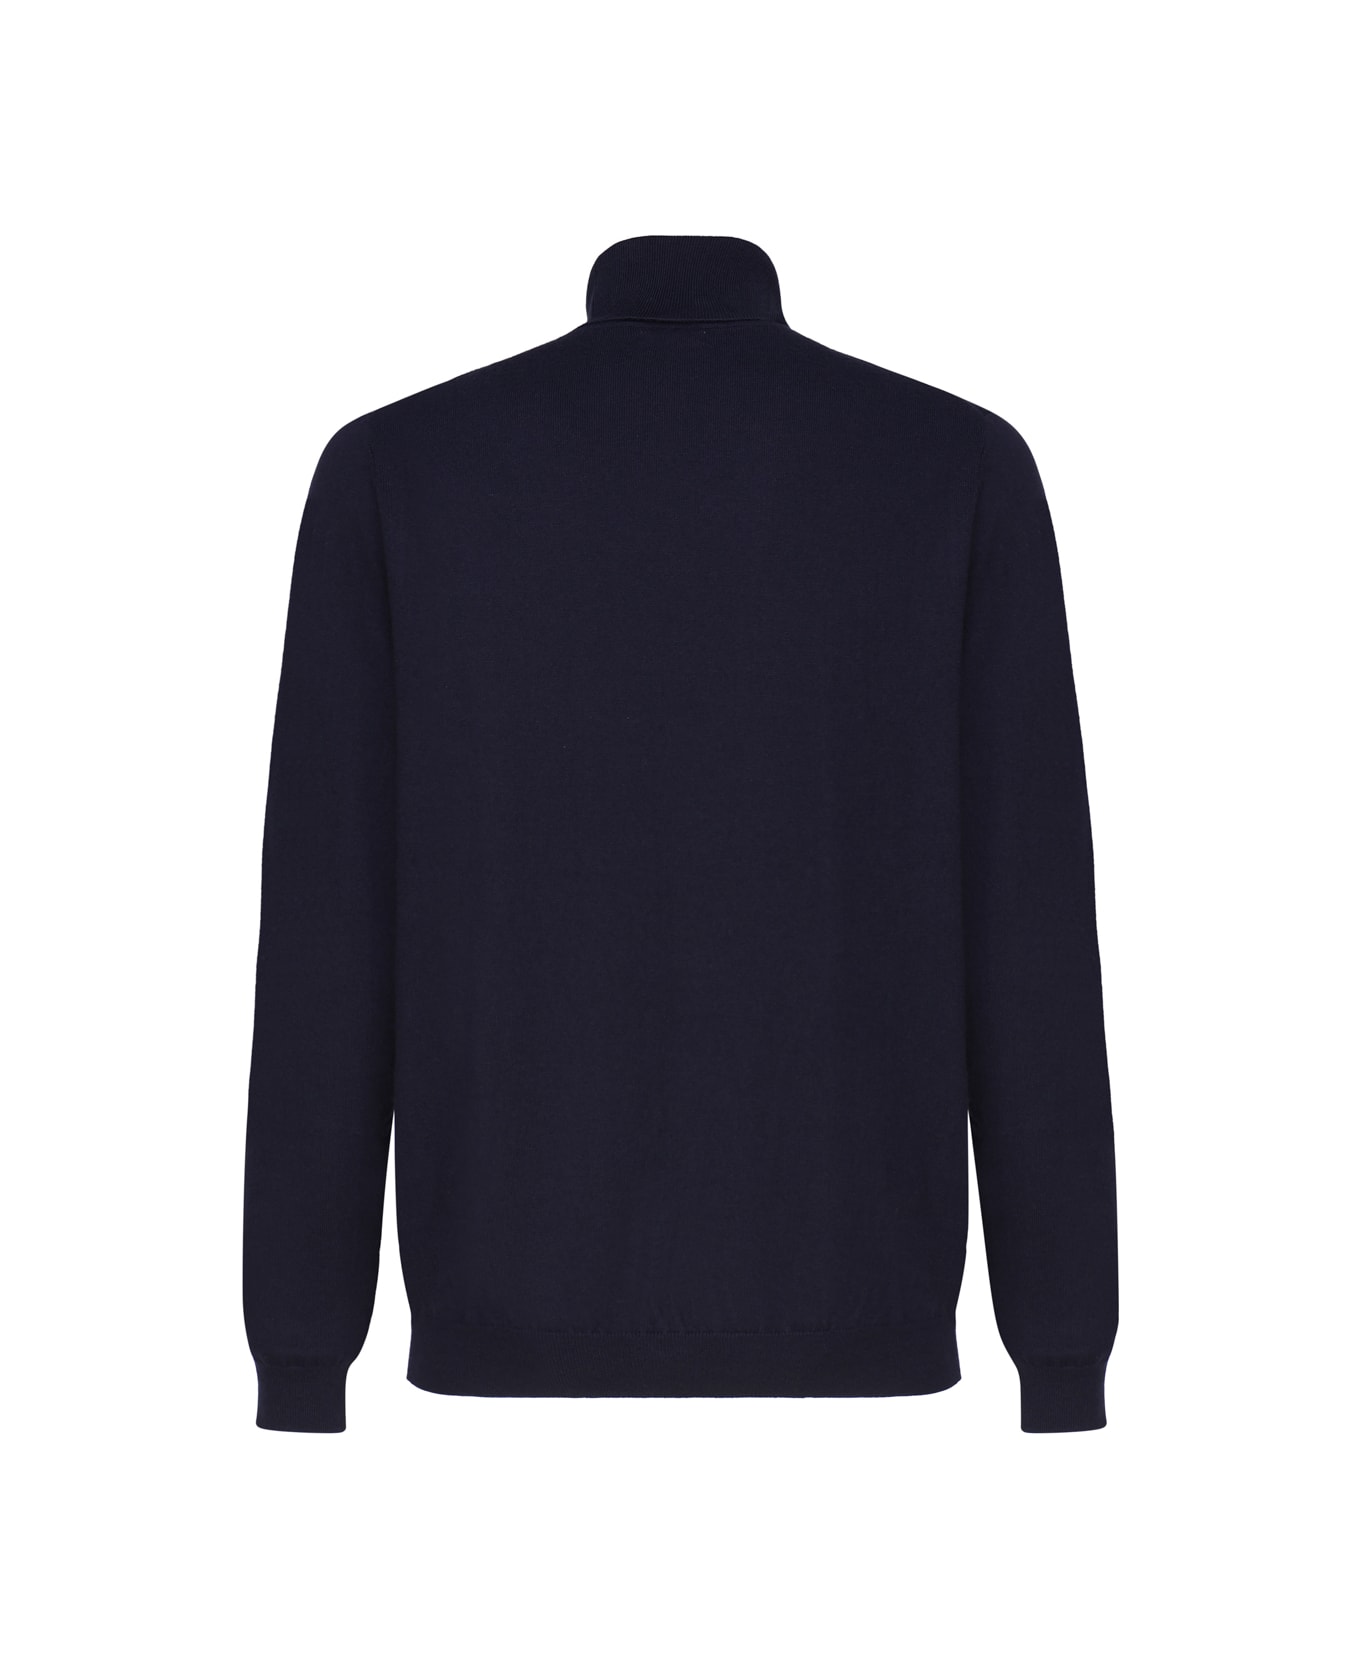 Sun 68 Wool Turtleneck Sweater - NAVY BLUE ニットウェア